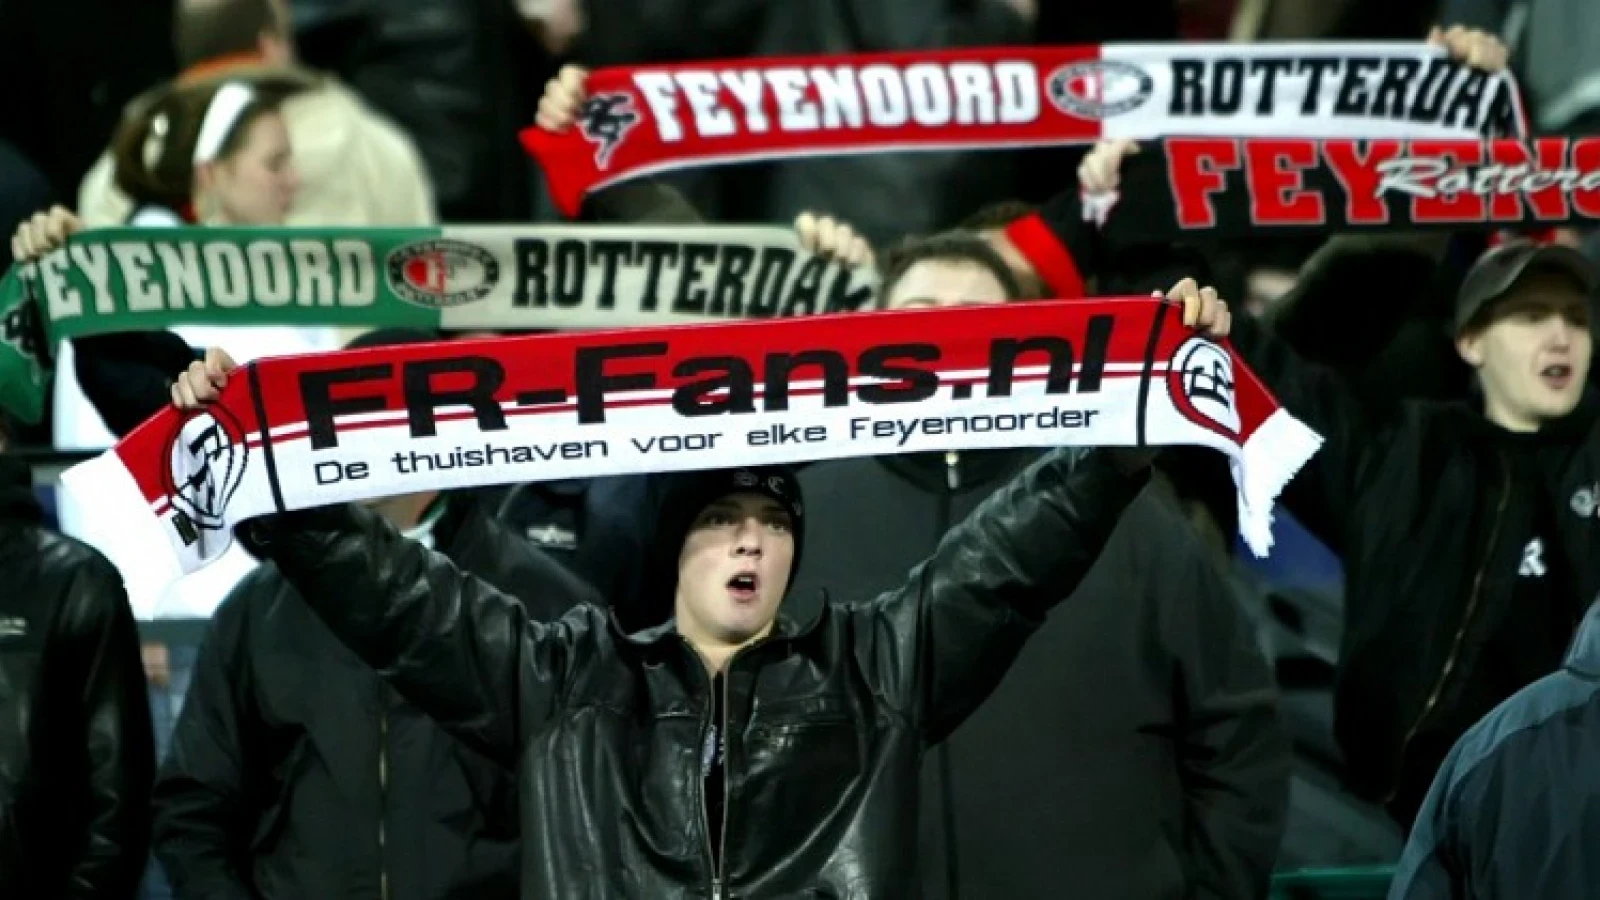 OPROEP | Sfeeractie Feyenoord - PSV